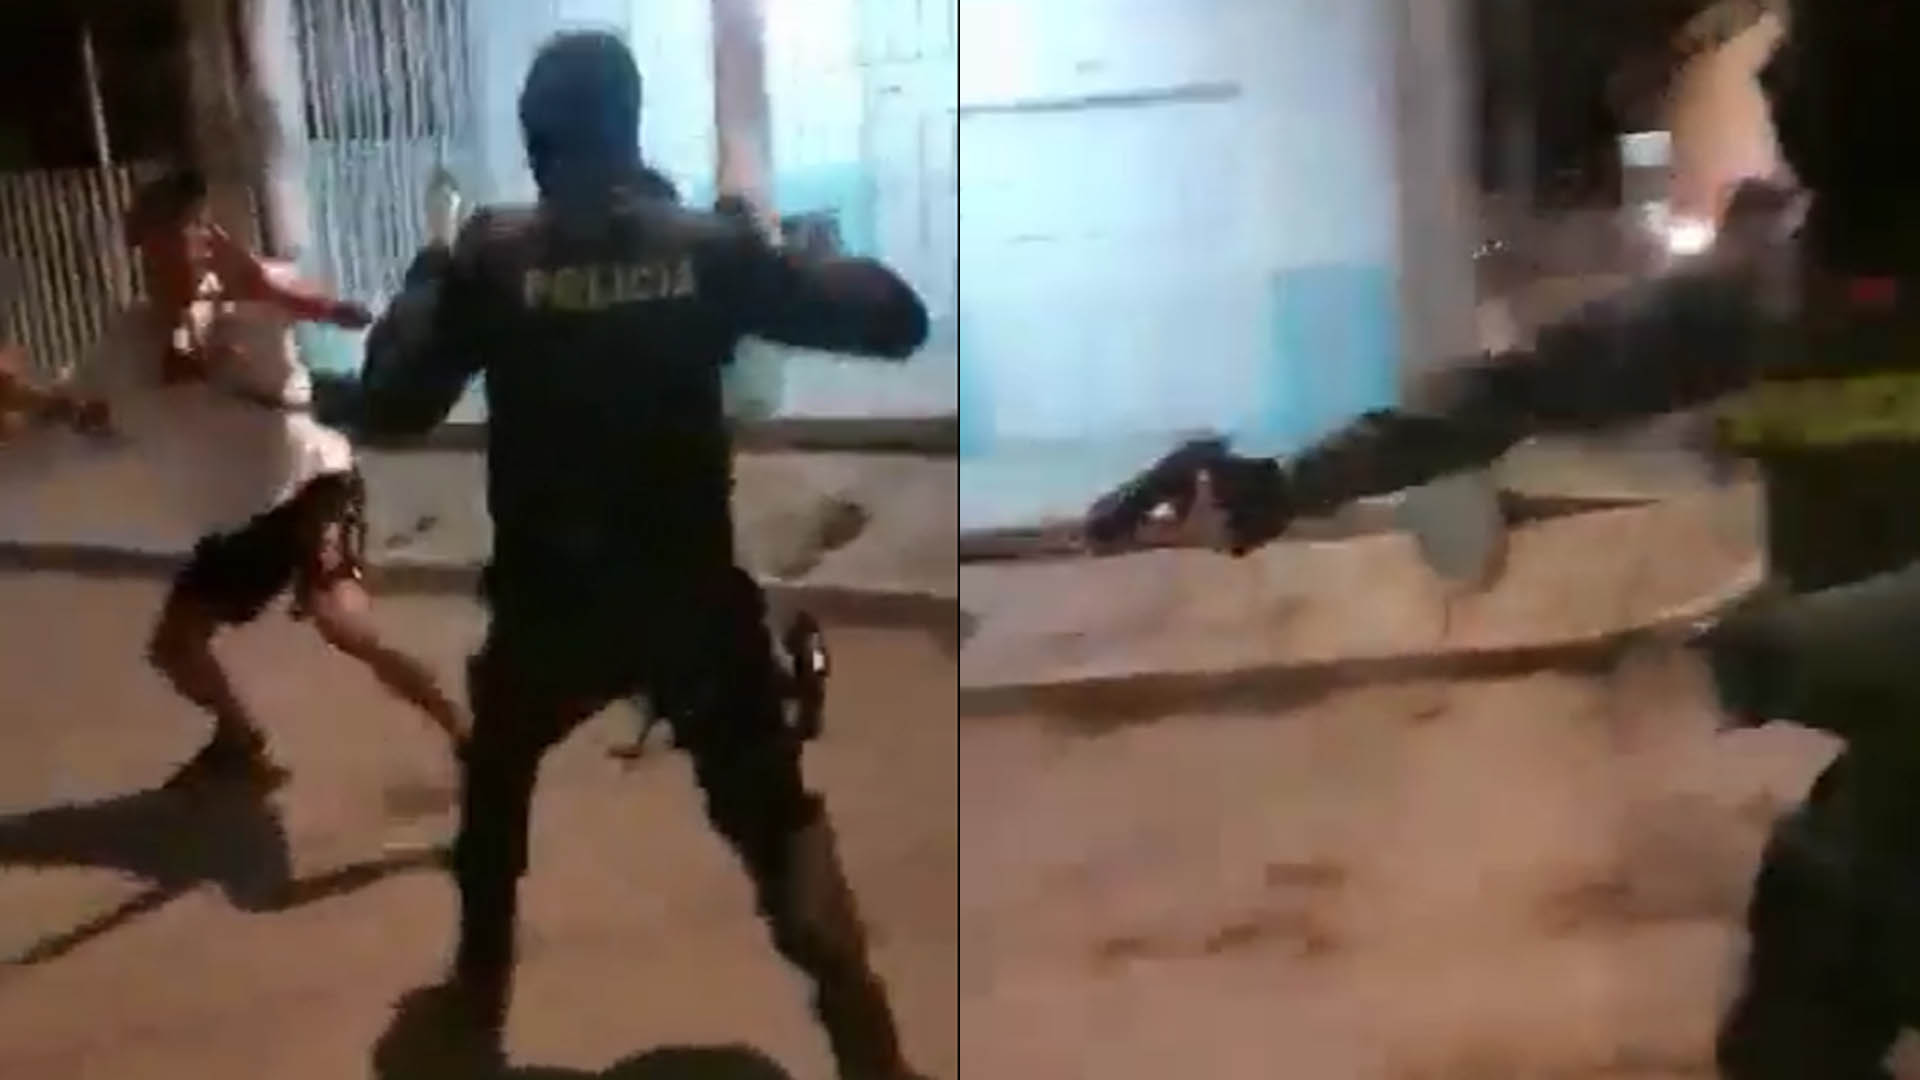 En la segunda imagen se observa el momento en el que el uniformado saca su arma de dotación y dispara al suelo, muy cerca de la humanidad del joven.